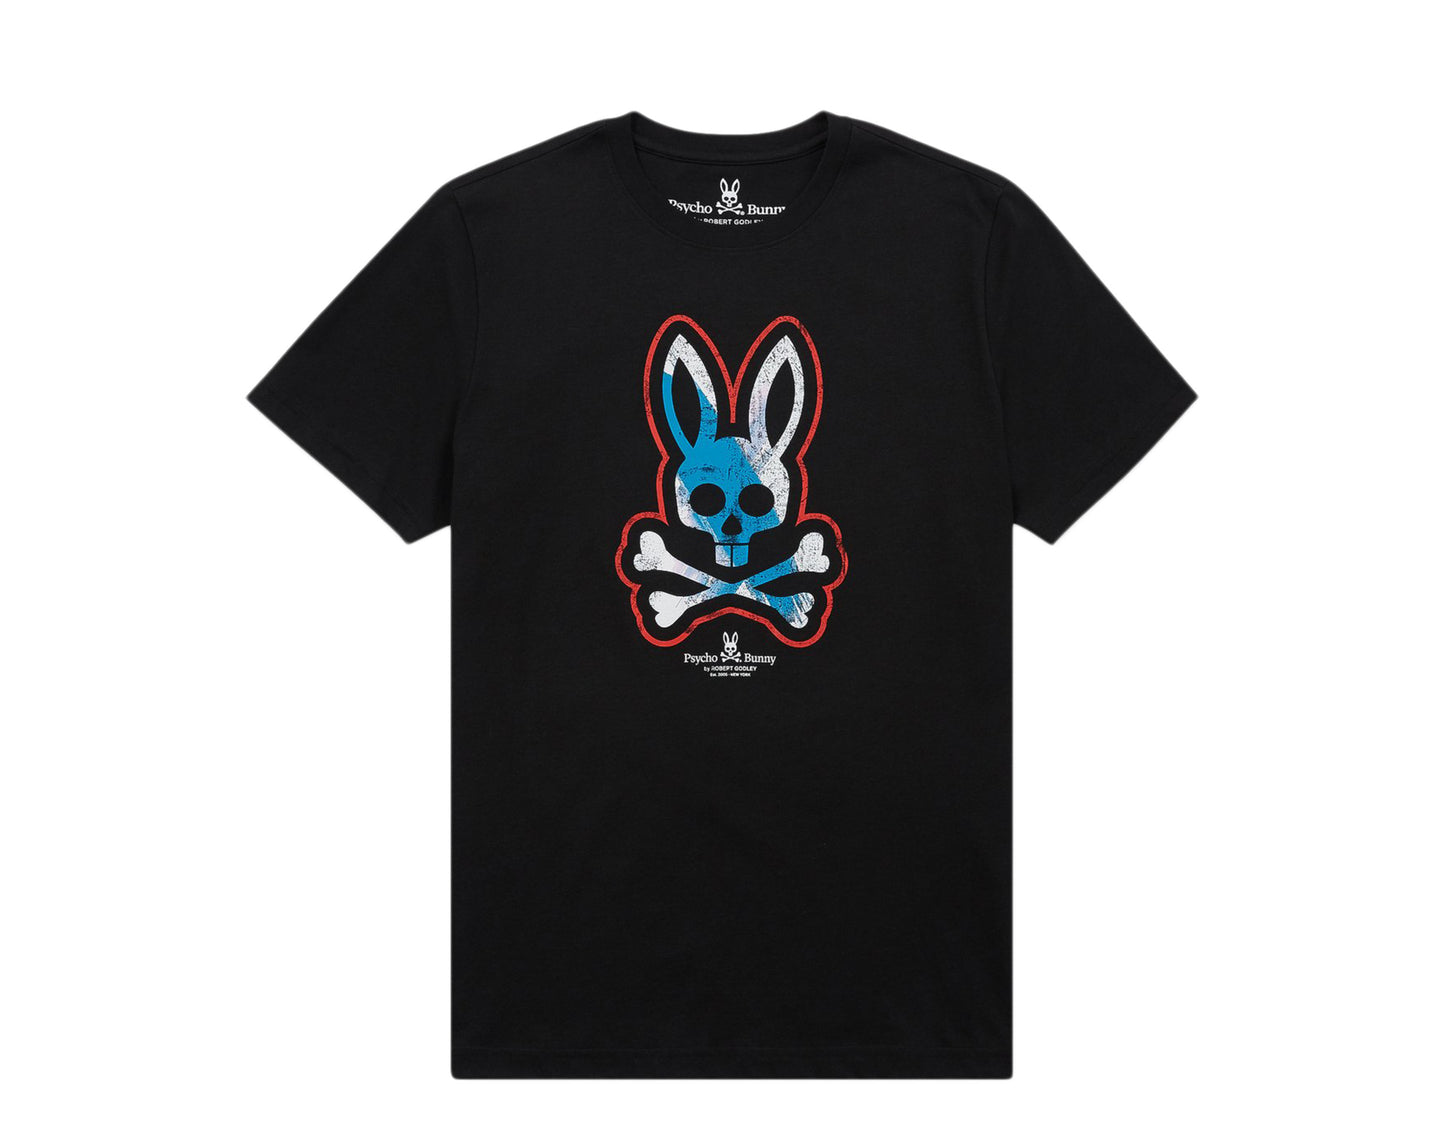 Psycho Bunny Halkirk Graphic Men's Tee Shirt